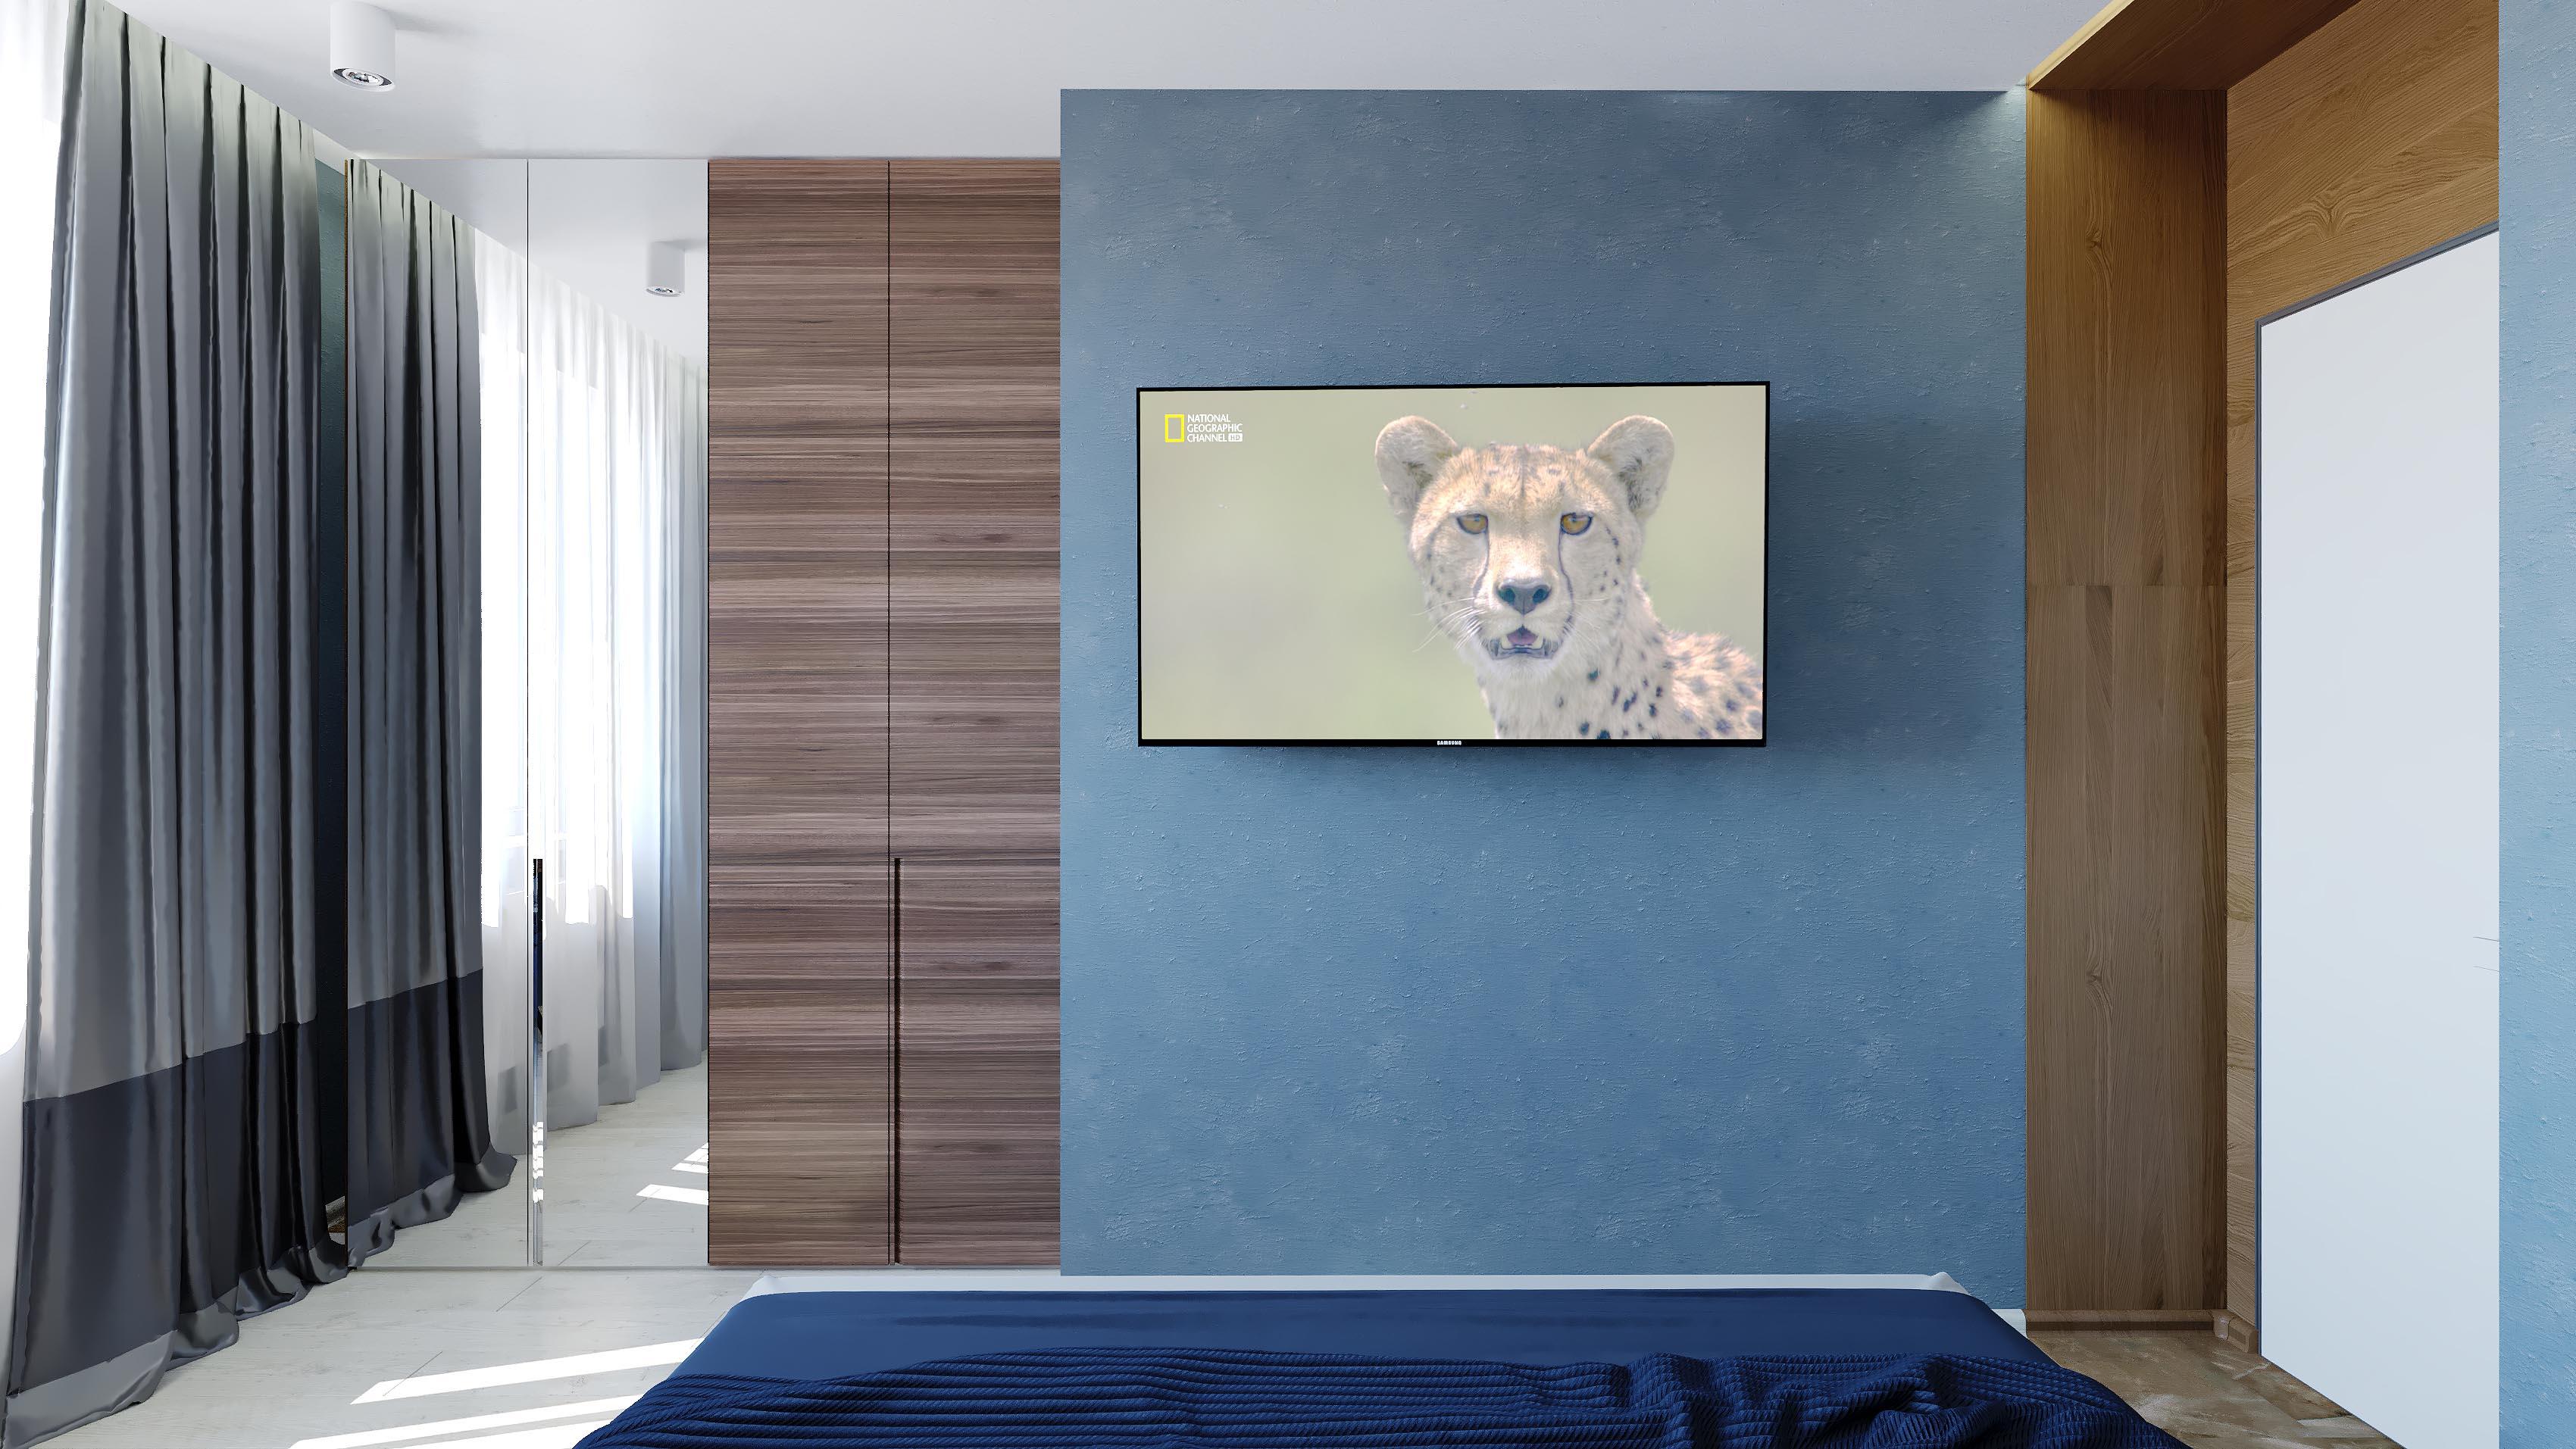 Интерьер коридора с панно за телевизором, стеной с телевизором, телевизором на стене и керамогранитом на стену с телевизором